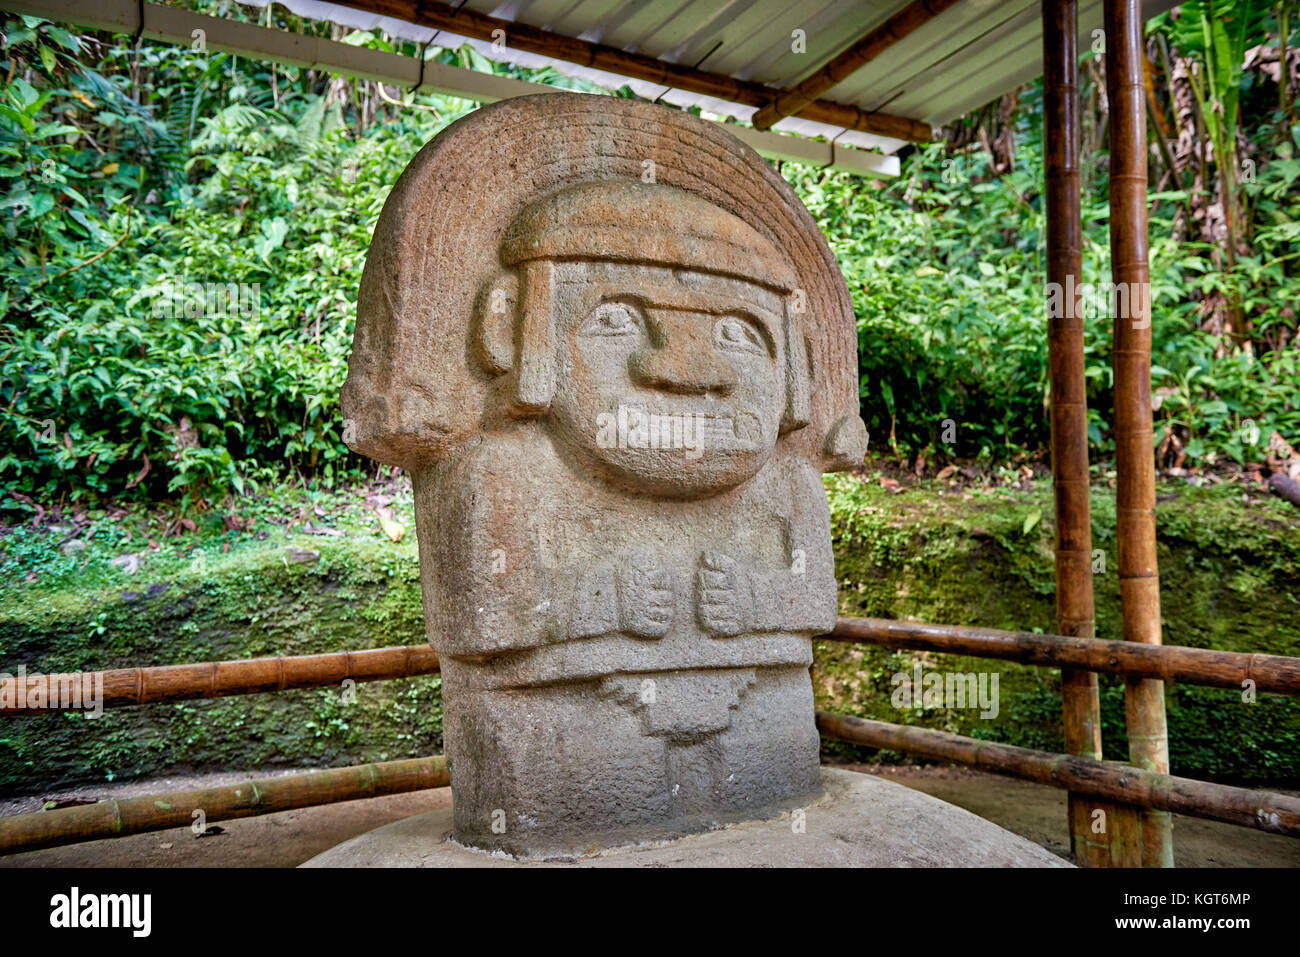 Bosque De Estatuas in archaeological park Parque Arqueologico De San Agustin , Colombia, South America Stock Photo